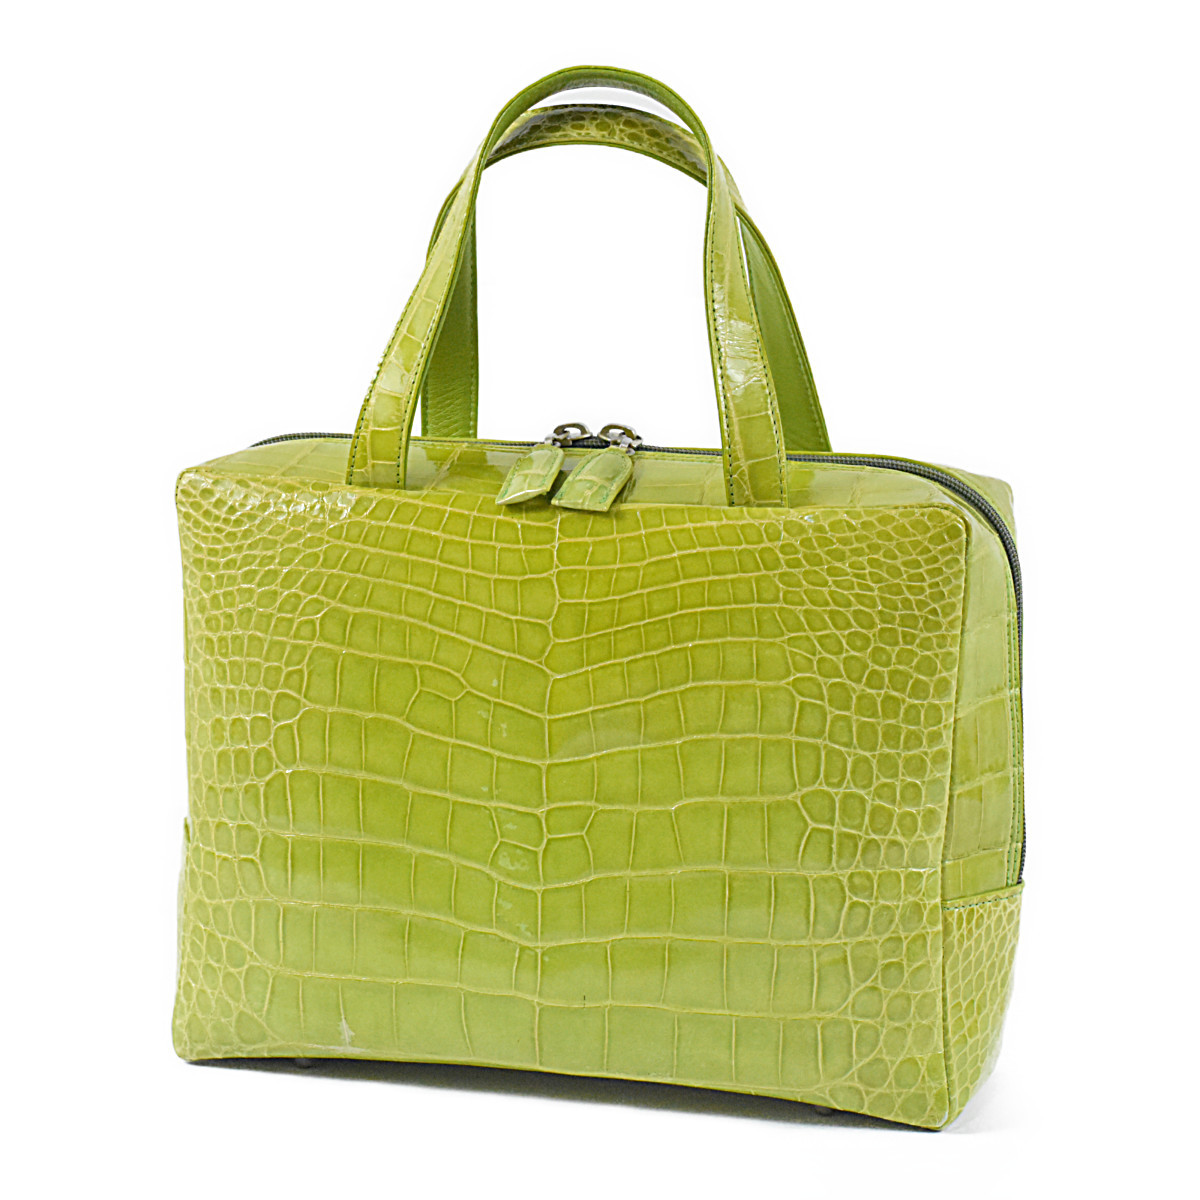 クロコダイル シャイニング アリゲーター 鮮やかで美しいグリーンカラー ハンドバッグ トートバッグ 革の宝石_画像4